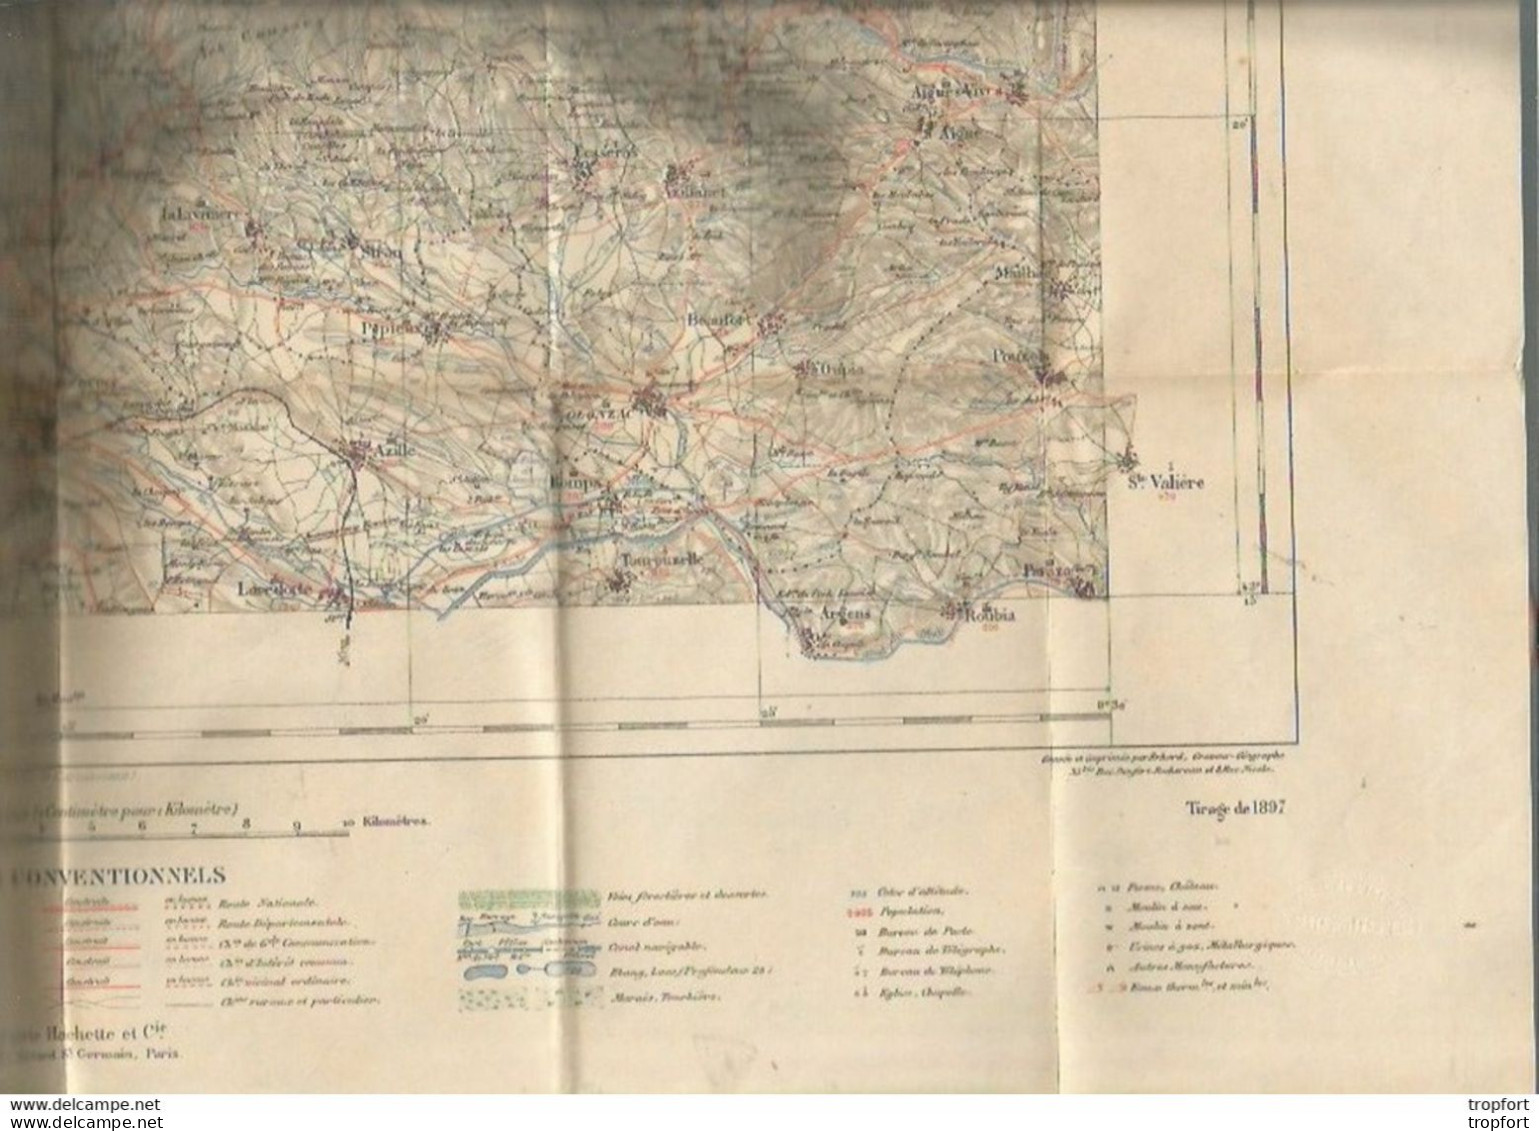 FF / Vintage / Carte De Poche MINISTERE DE L'INTERIEUR St PONS Tirage De 1897 Saint PONS Ardeche - Mapas Geográficas